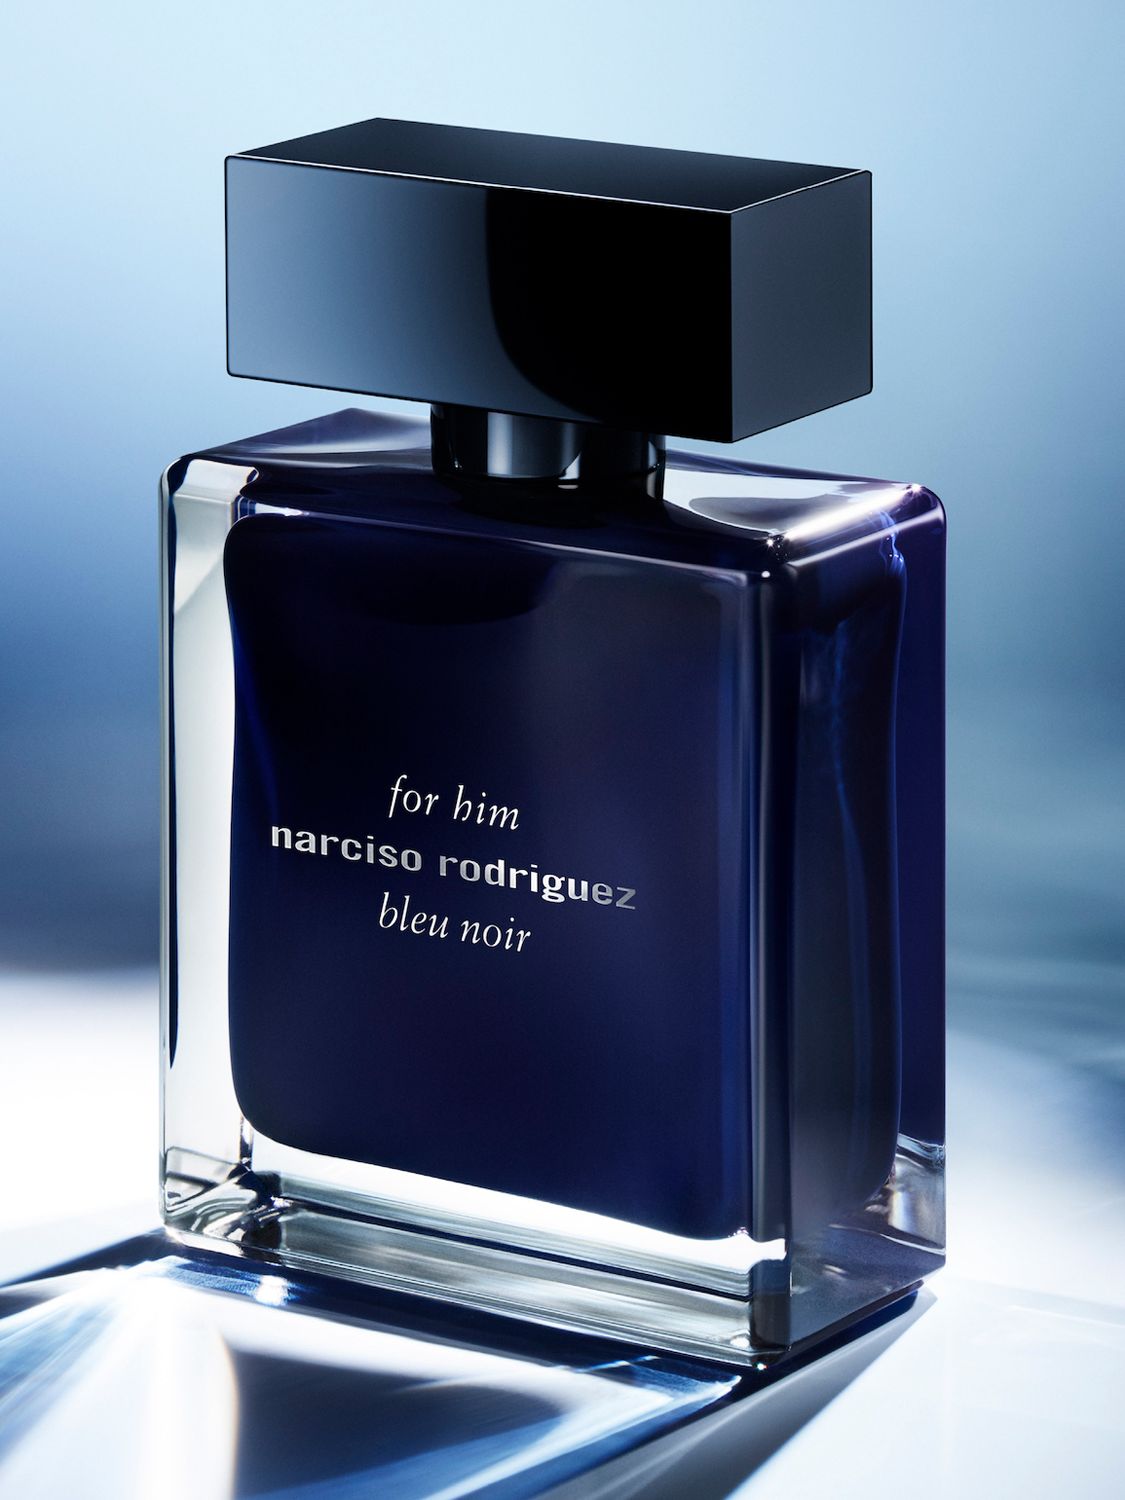 Narciso Rodriguez For Him Bleu Noir Eau De Toilette, 50ml At John Lewis  Partners